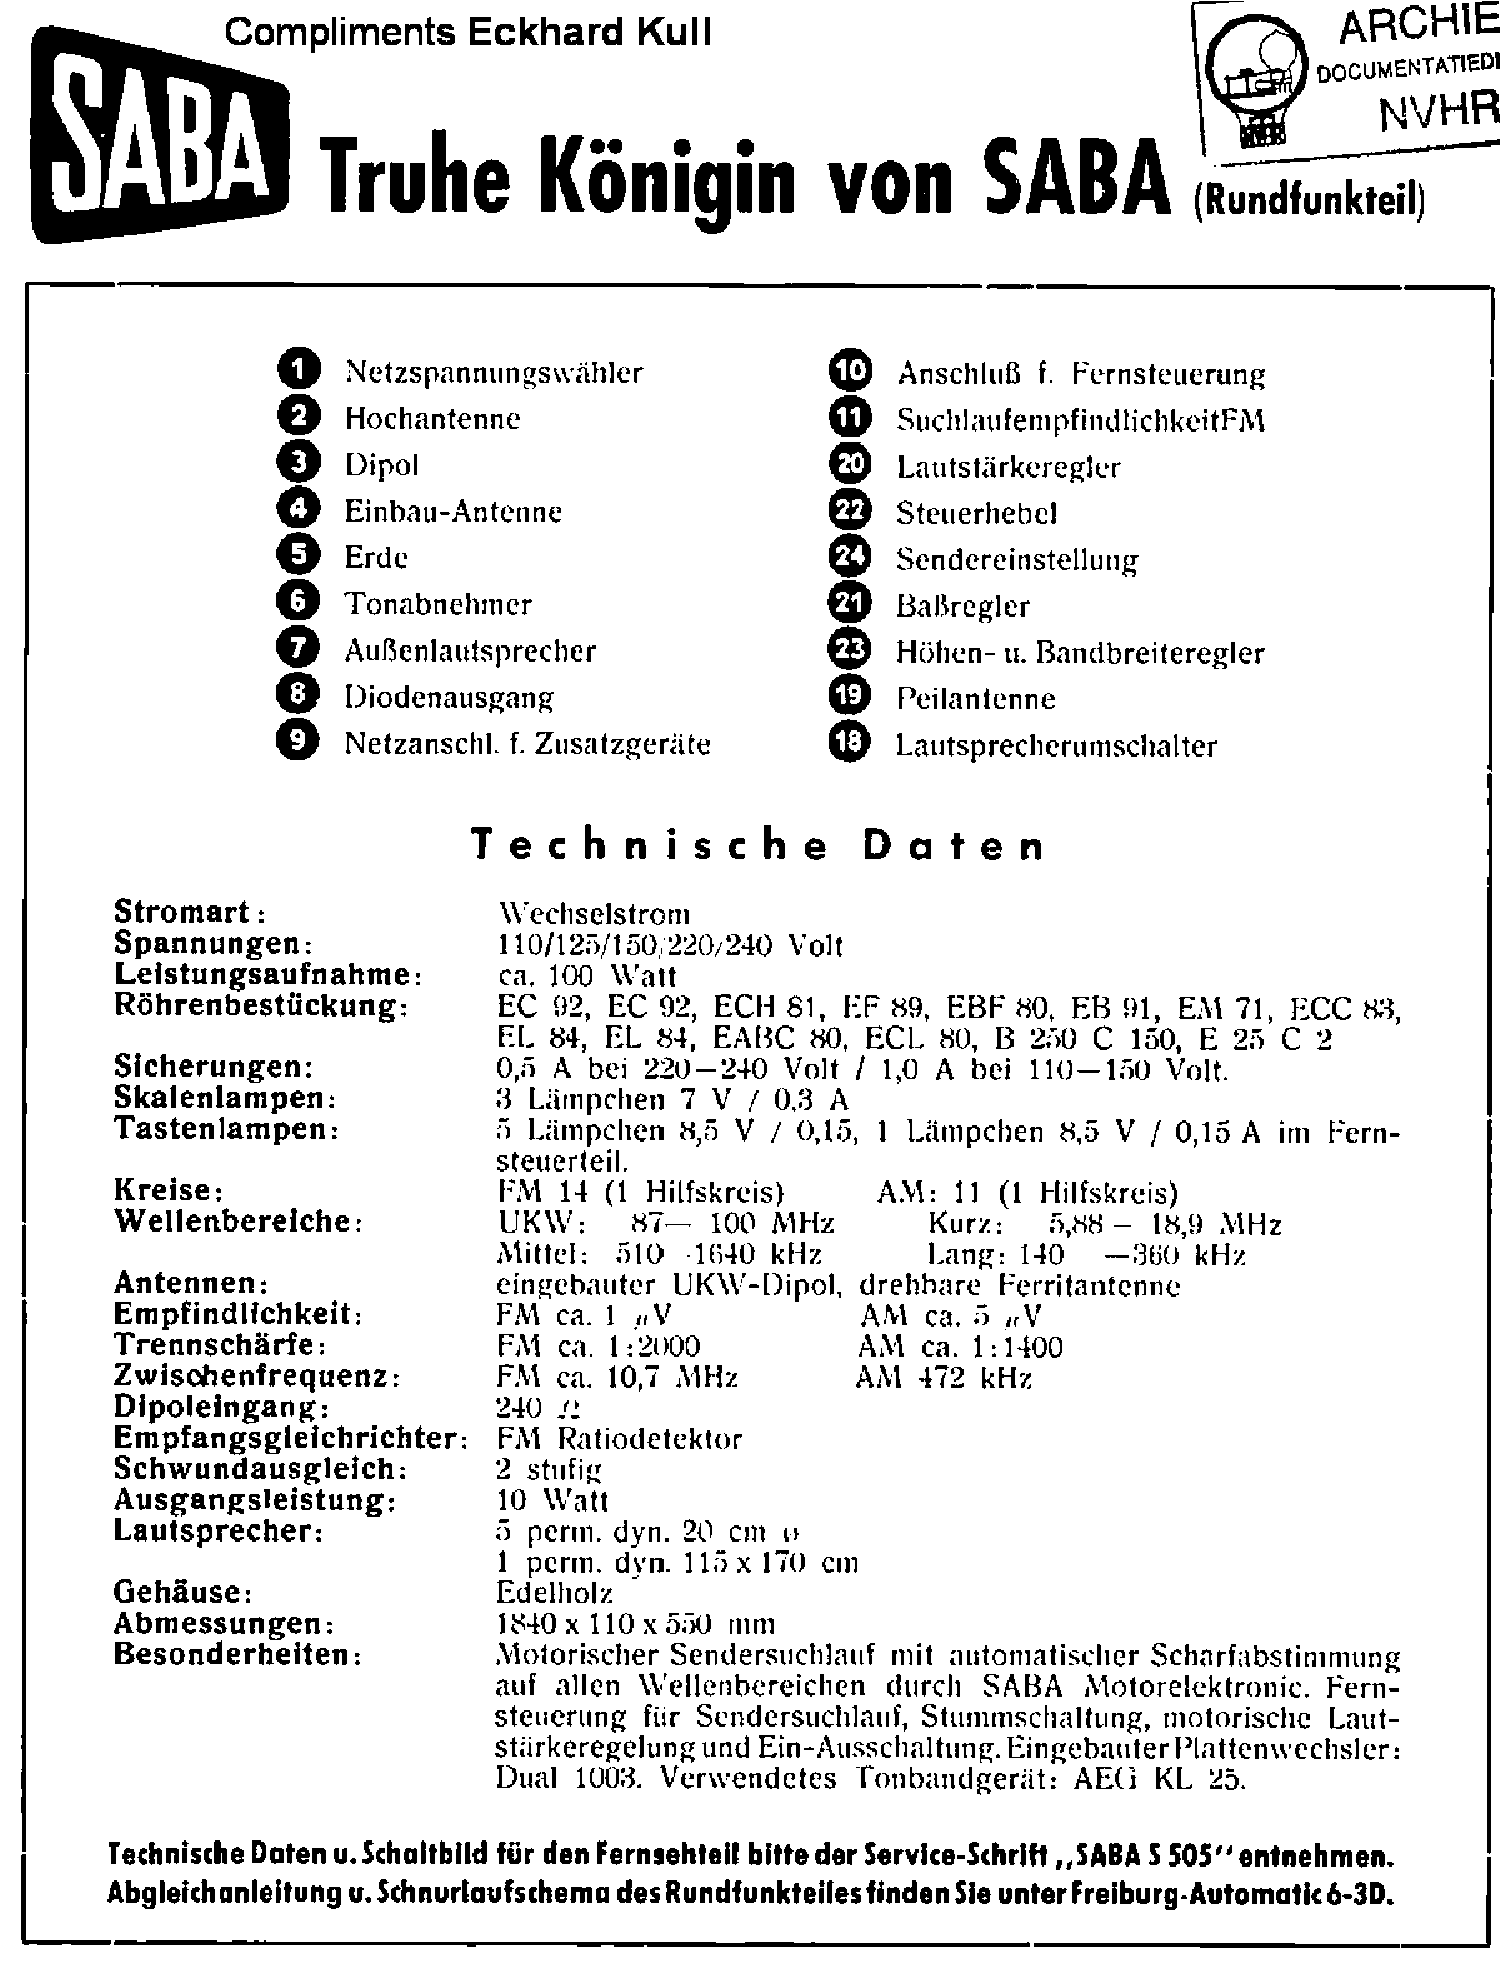 SABA KONIGIN-VONSABA AM-FM RECEIVER 1955 SM service manual (1st page)